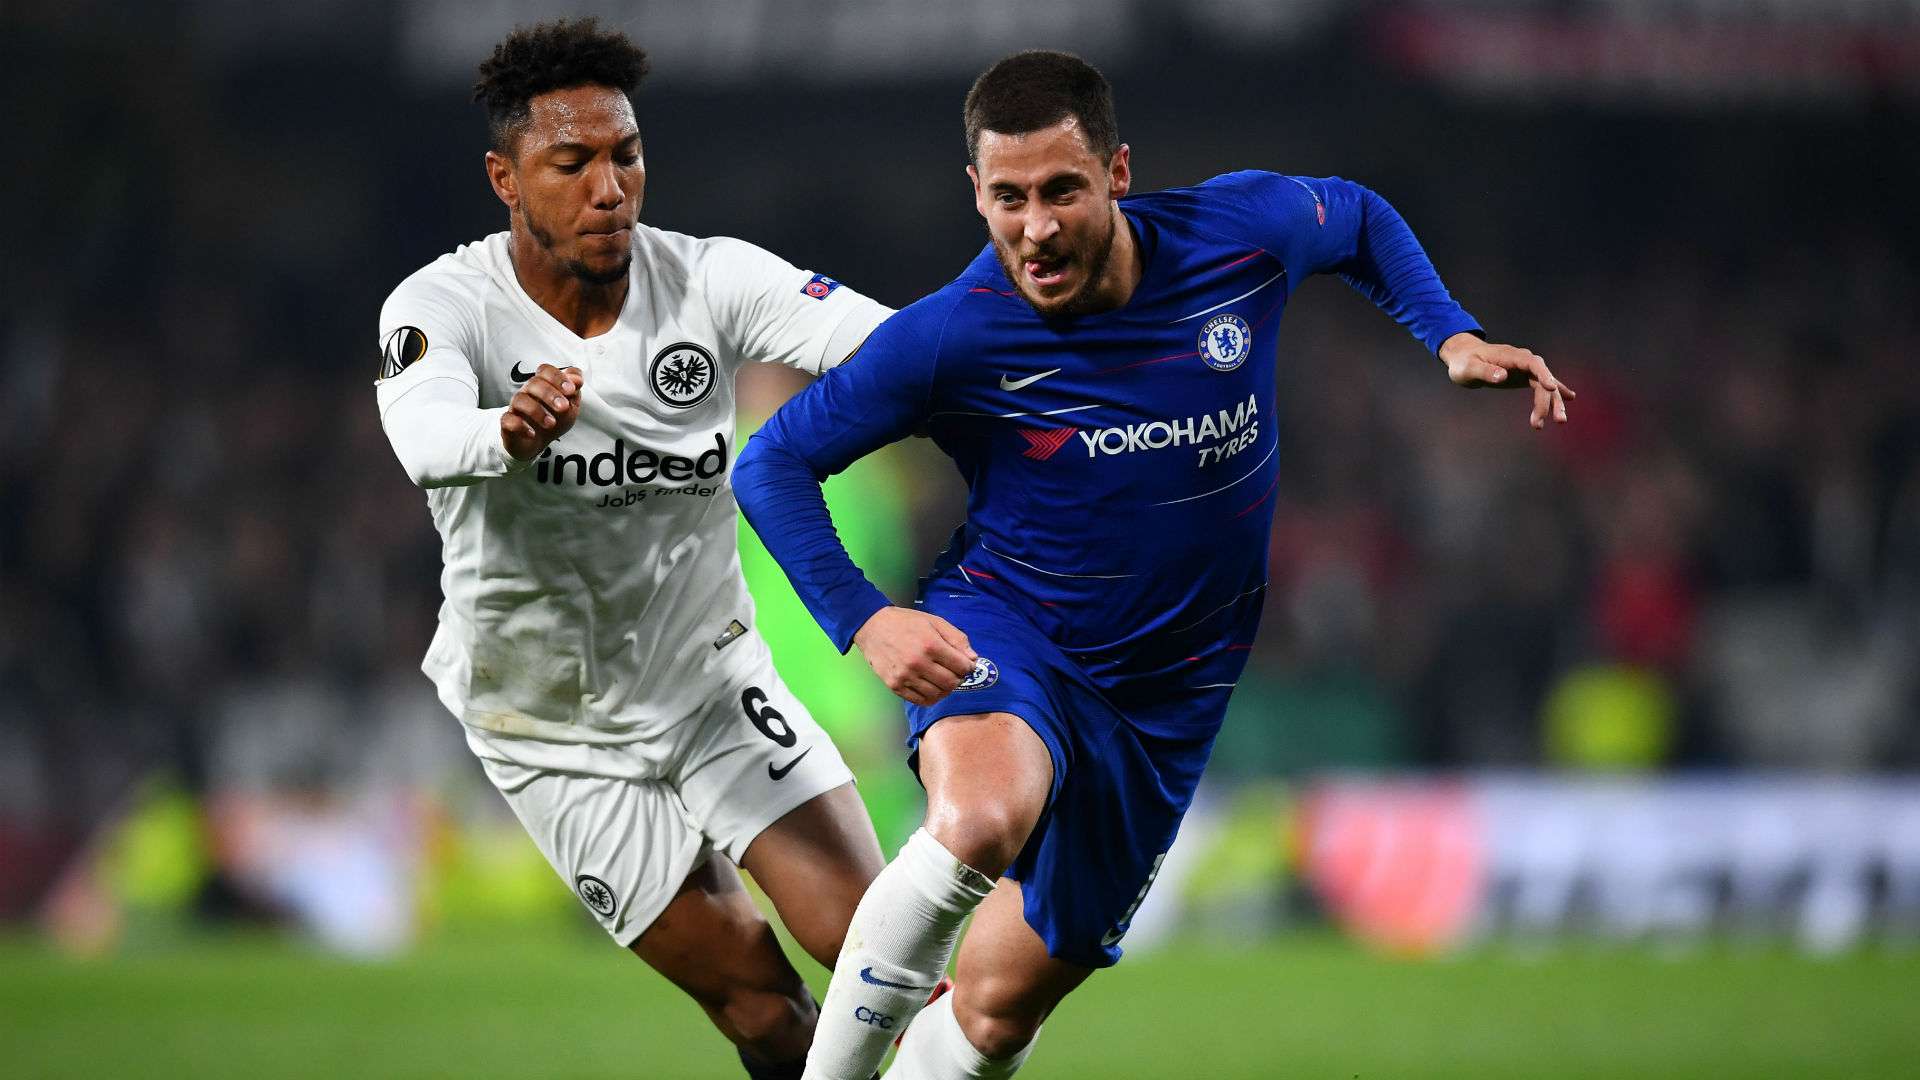 Eden Hazard Jonathan De Guzman Eintracht Frankfurt Chelsea Europa League 2019